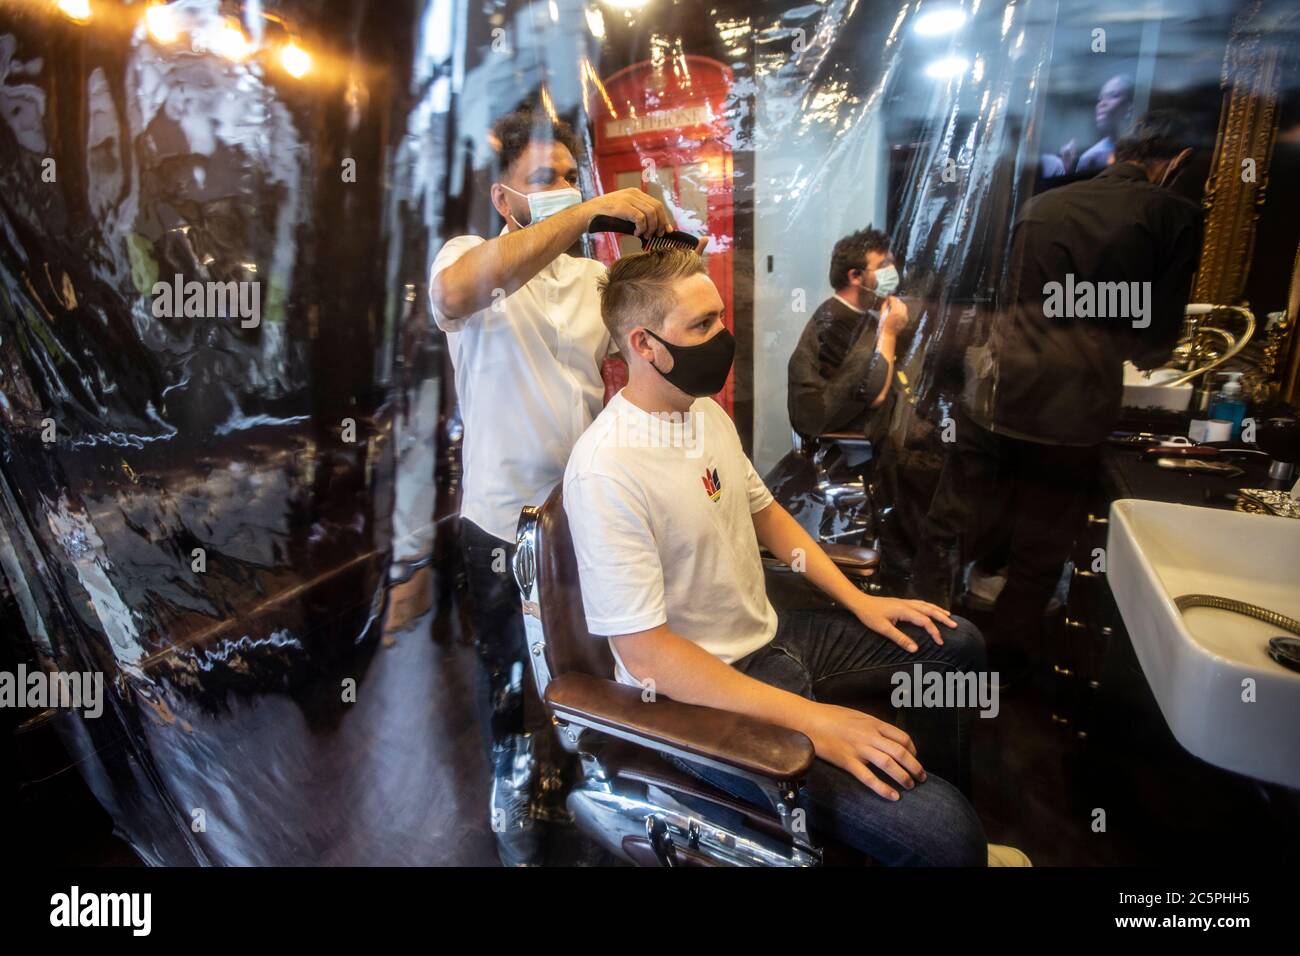 Le salon de coiffure Gentleman a rouvert avec une couverture plastique de précaution et le styliste portant des masques après les restrictions de verrouillage du coronavirus. Banque D'Images